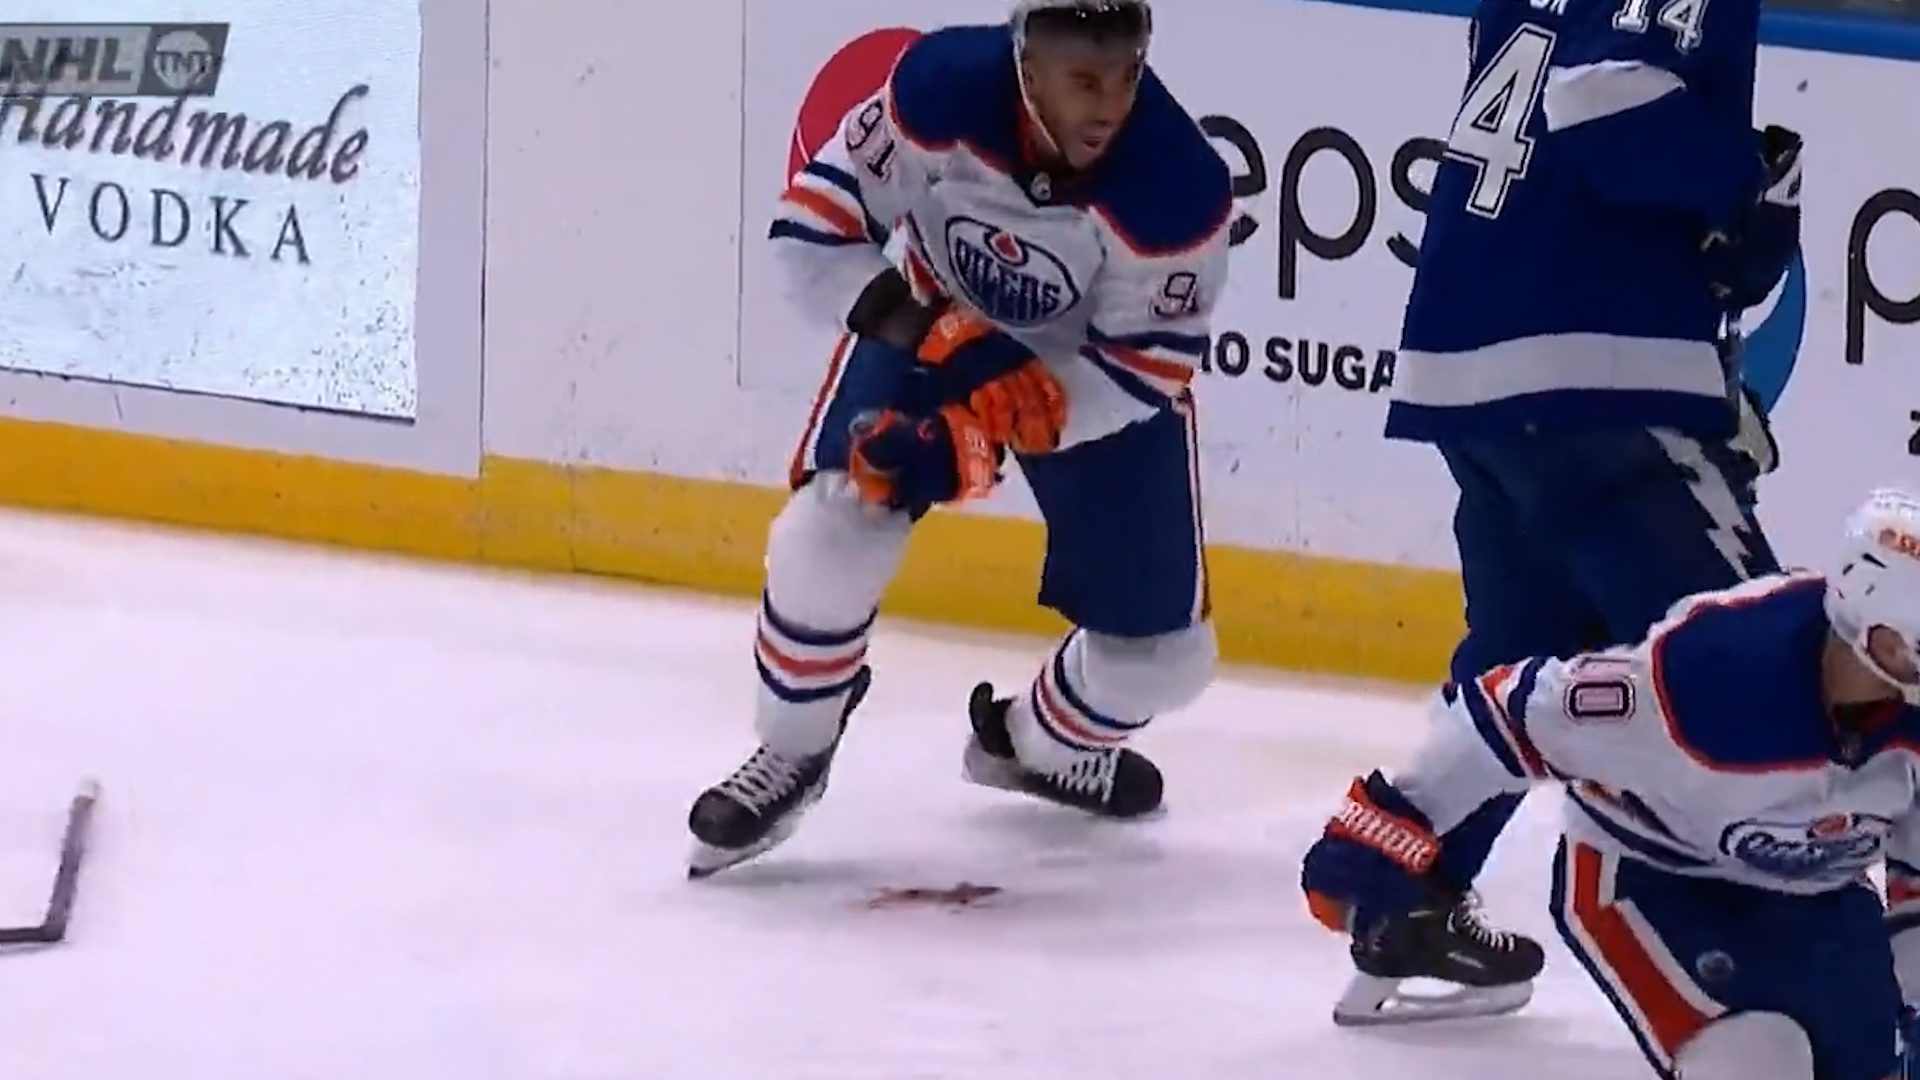 Un jugador de la NHL sufrió un espeluznante corte en una de sus muñecas y tuvo que ser hospitalizado